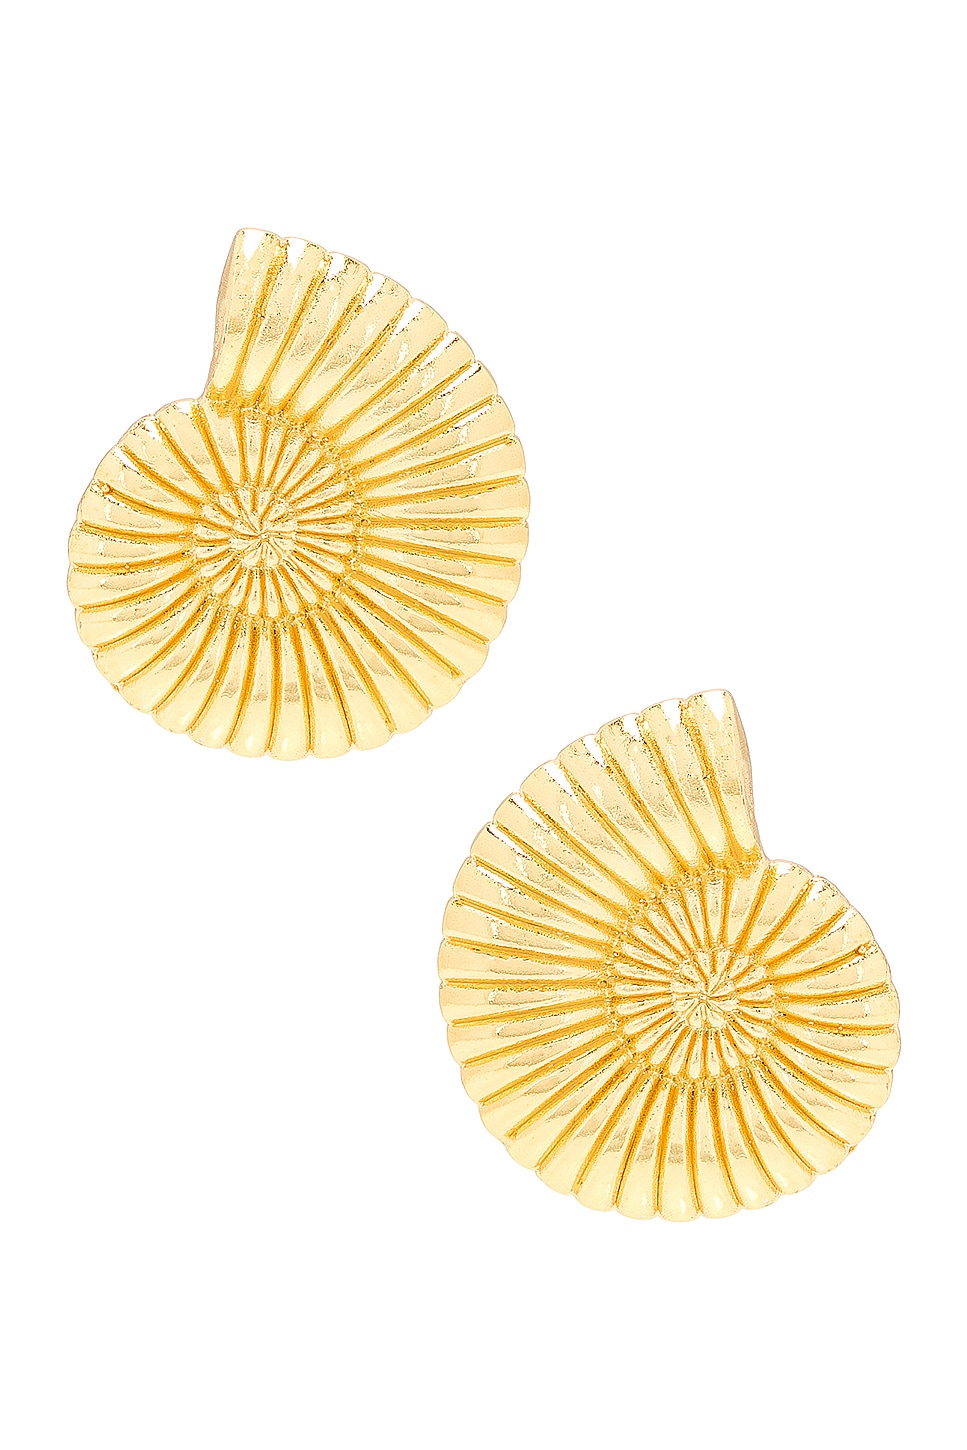 Vintage Shell Earrings in Metallic Gold